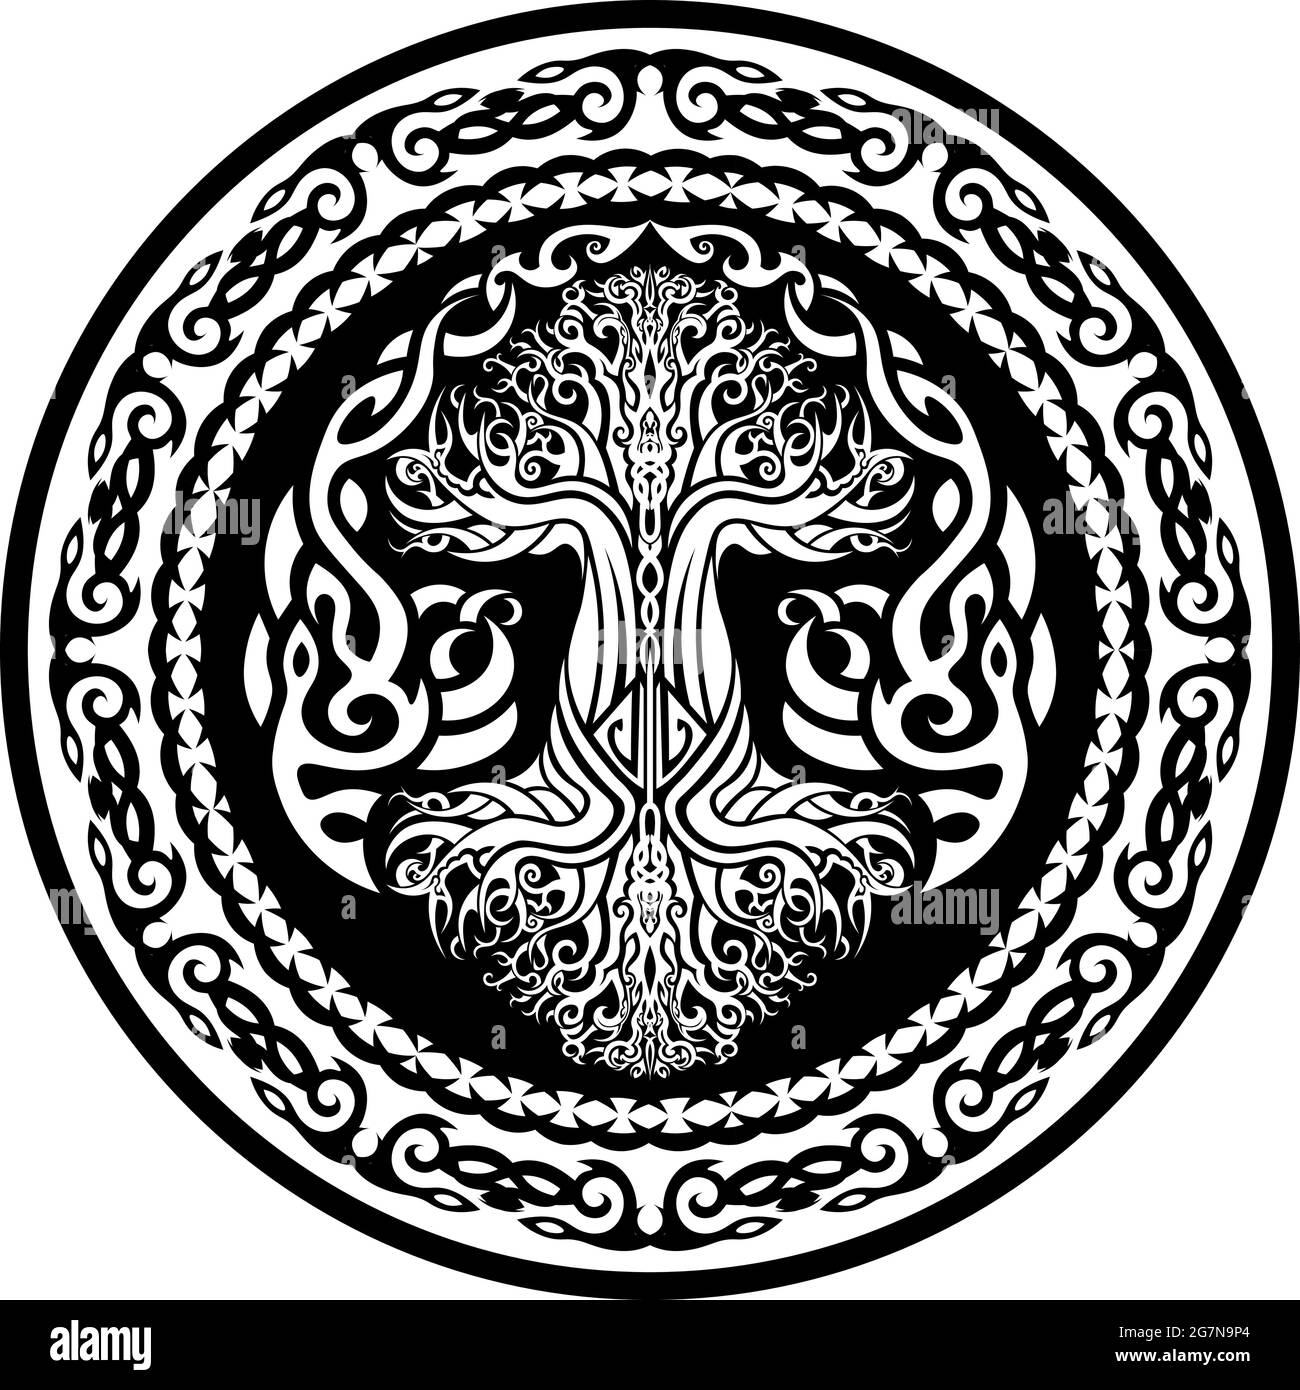 amulette noire et blanche ornementale avec yggdrasil, arbre viking de la vie dans le style celtique tribal Illustration de Vecteur